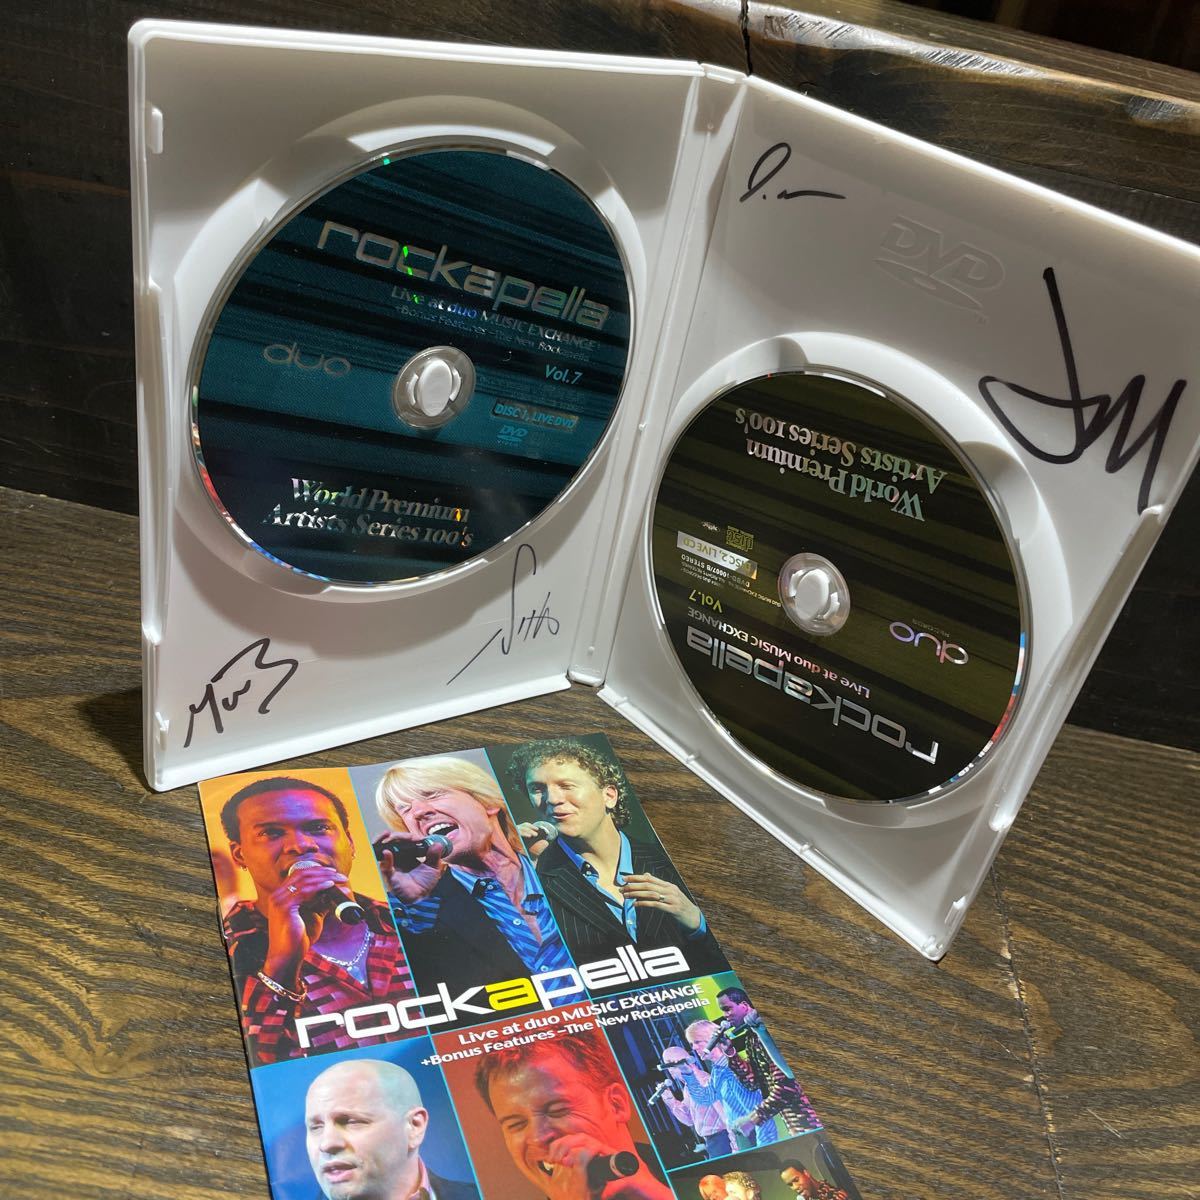 Ｗｏｒｌｄ Ｐｒｅｍｉｕｍ Ａｒｔｉｓｔｓ Ｓｅｒｉｅｓ １００ｓ Ｖｏｌ．００７ ロッカペラ Rockapella CD+DVD